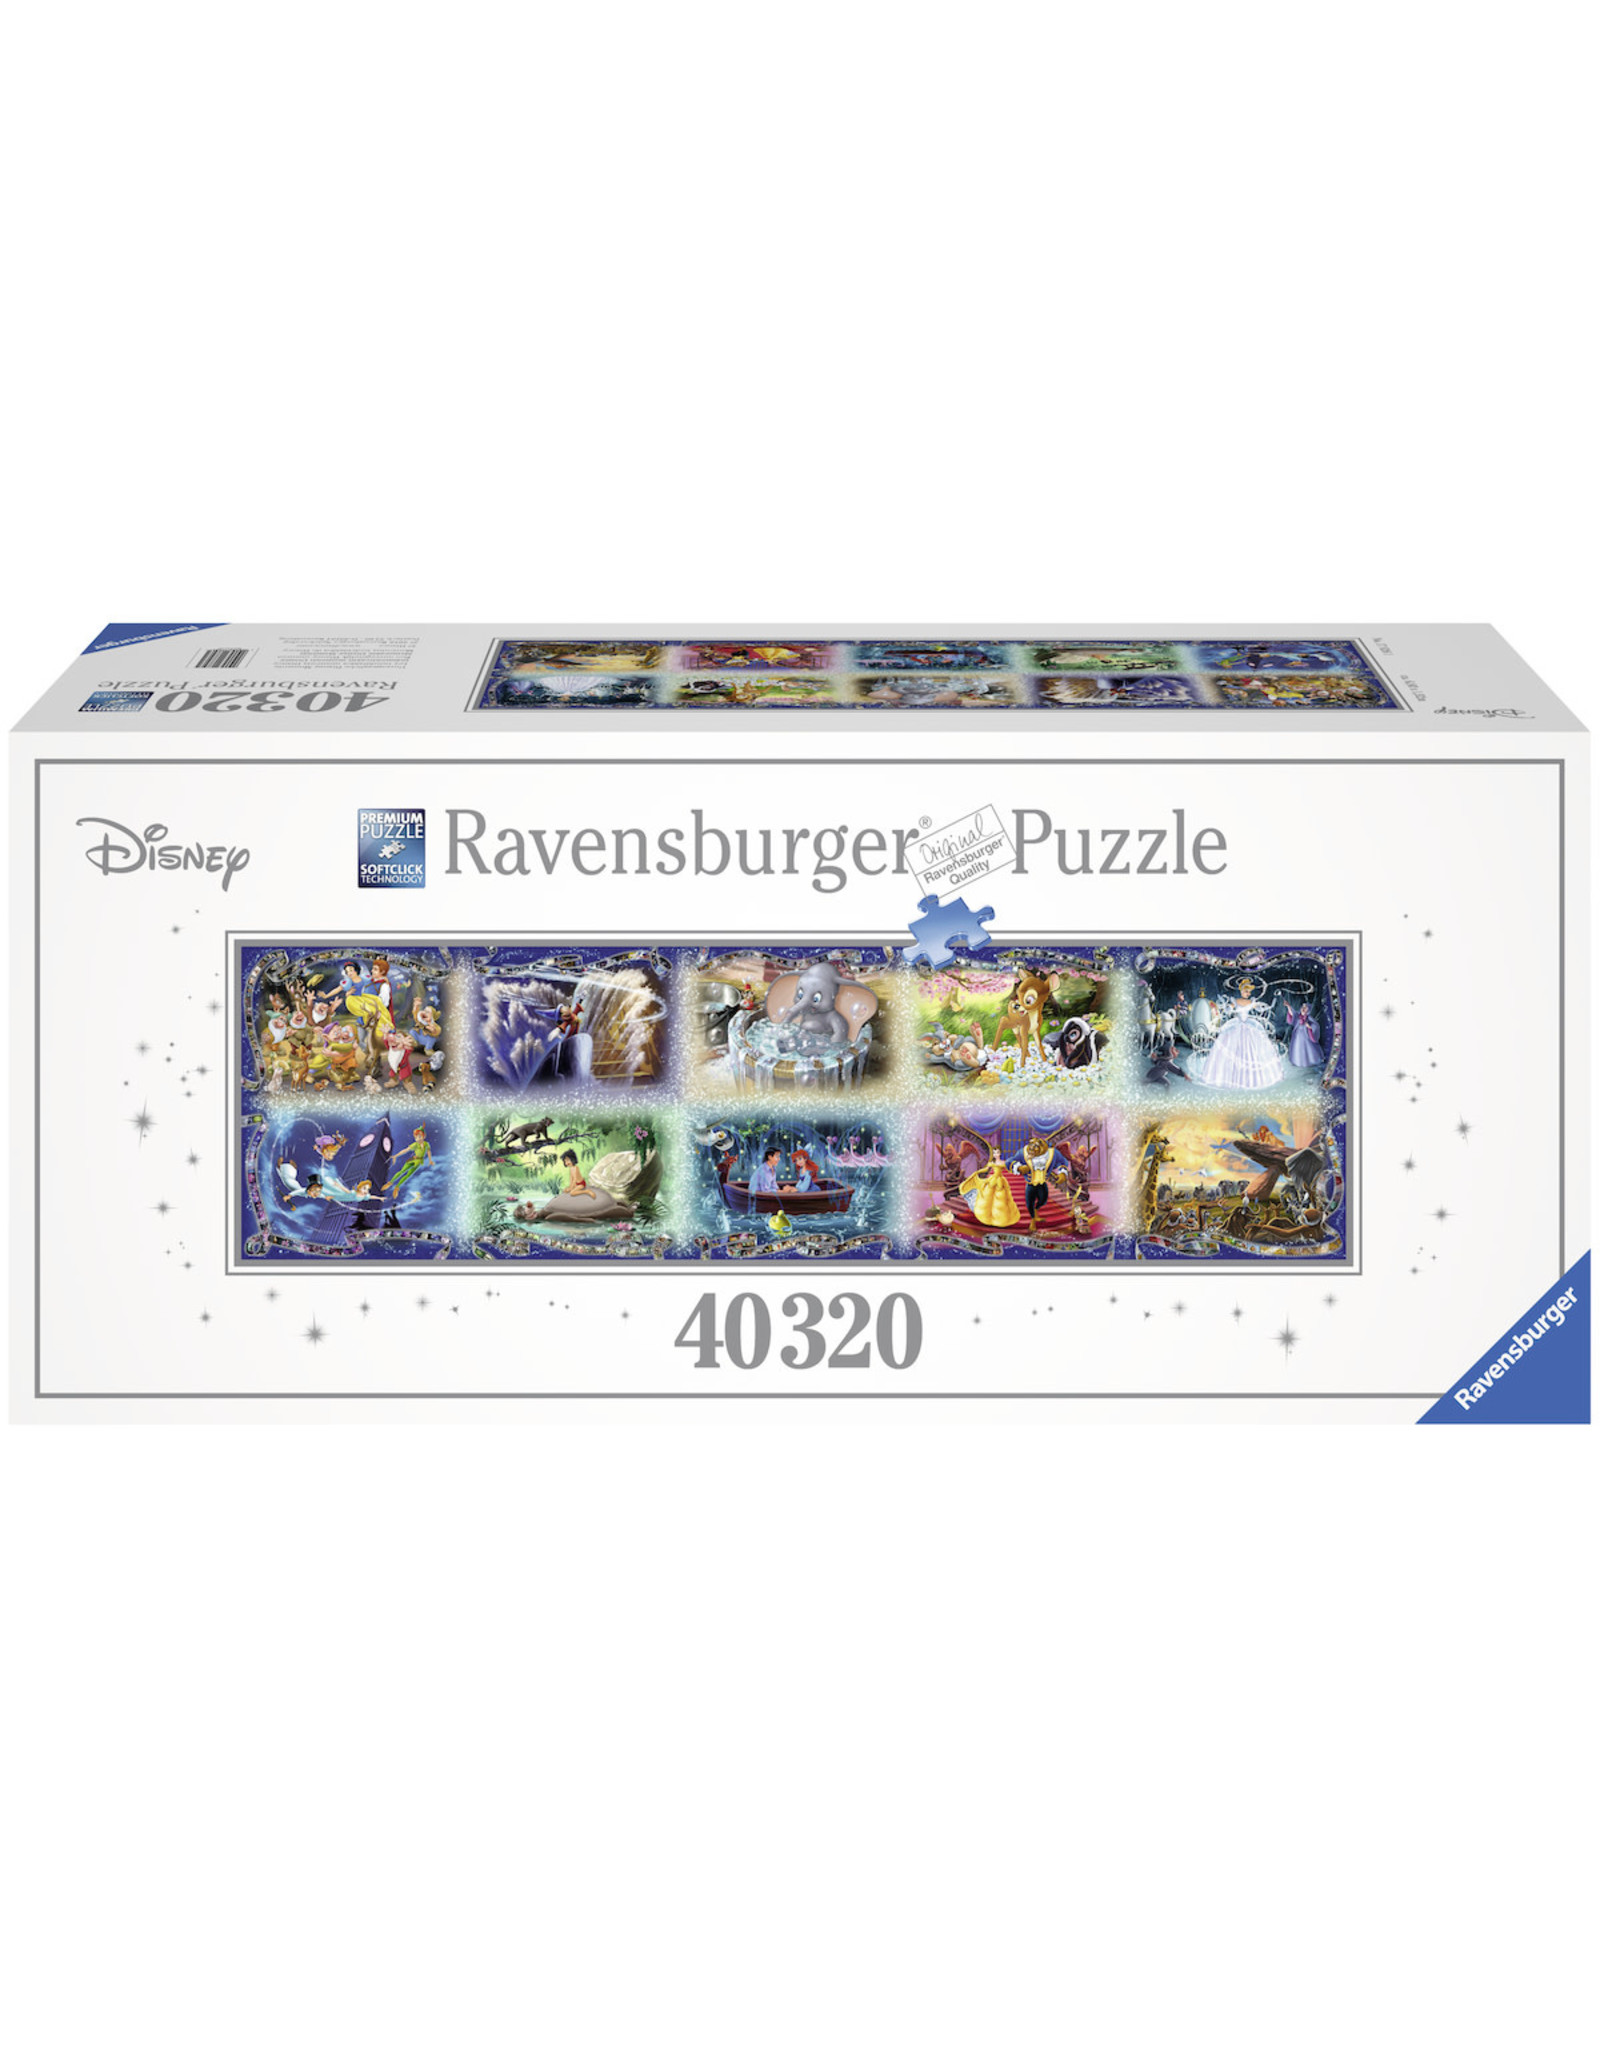 Ravensburger Ravensburger Puzzel  178261  Een Onvergetelijk Disneymoment 40320 stukjes